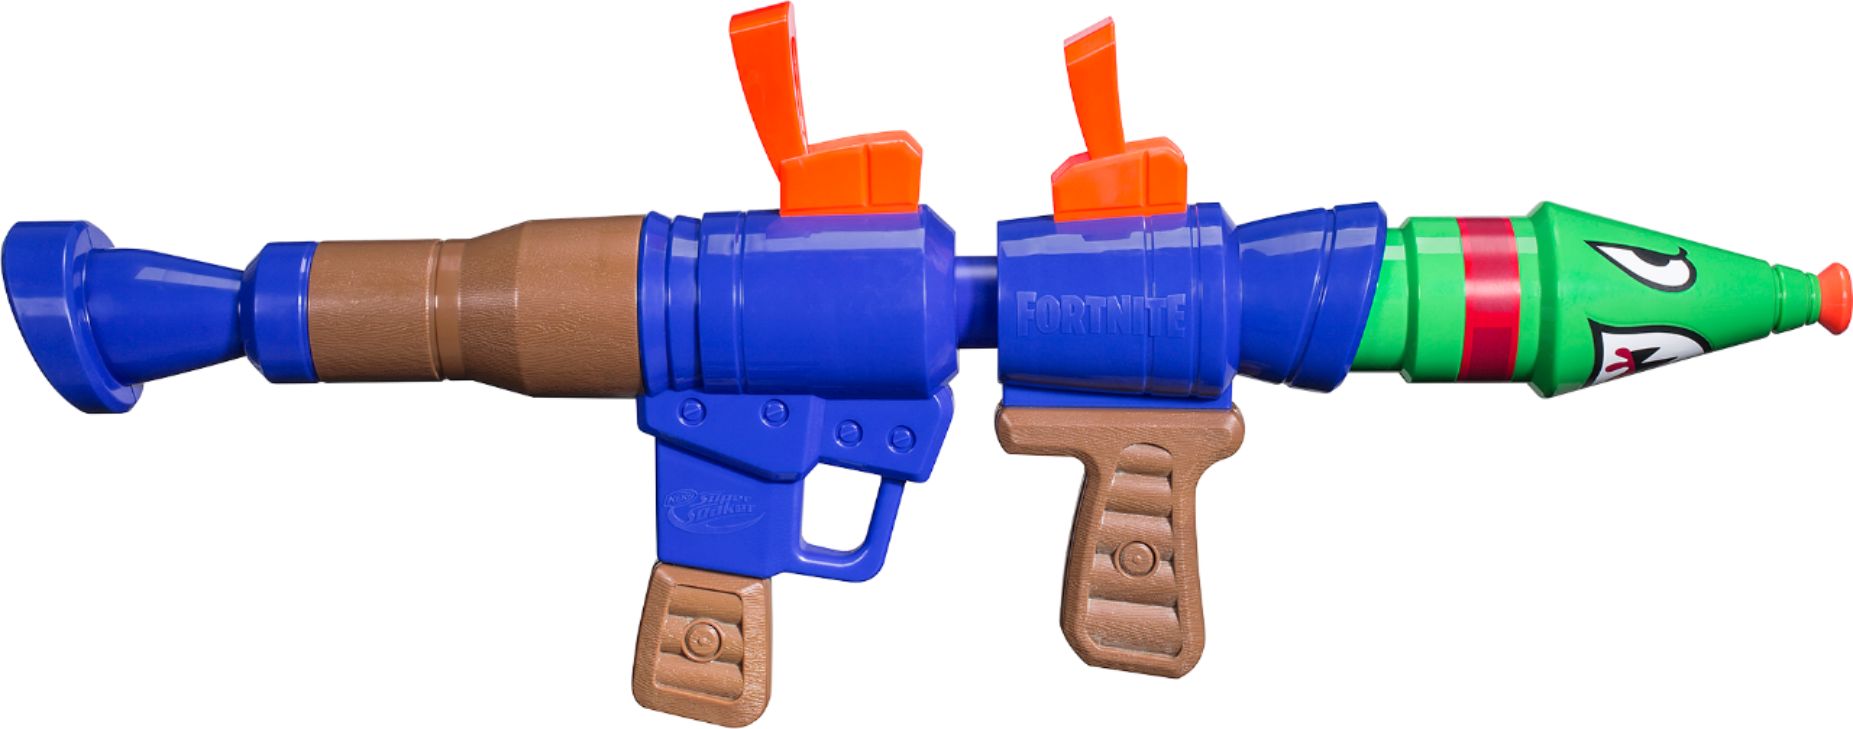 where to buy nerf water guns